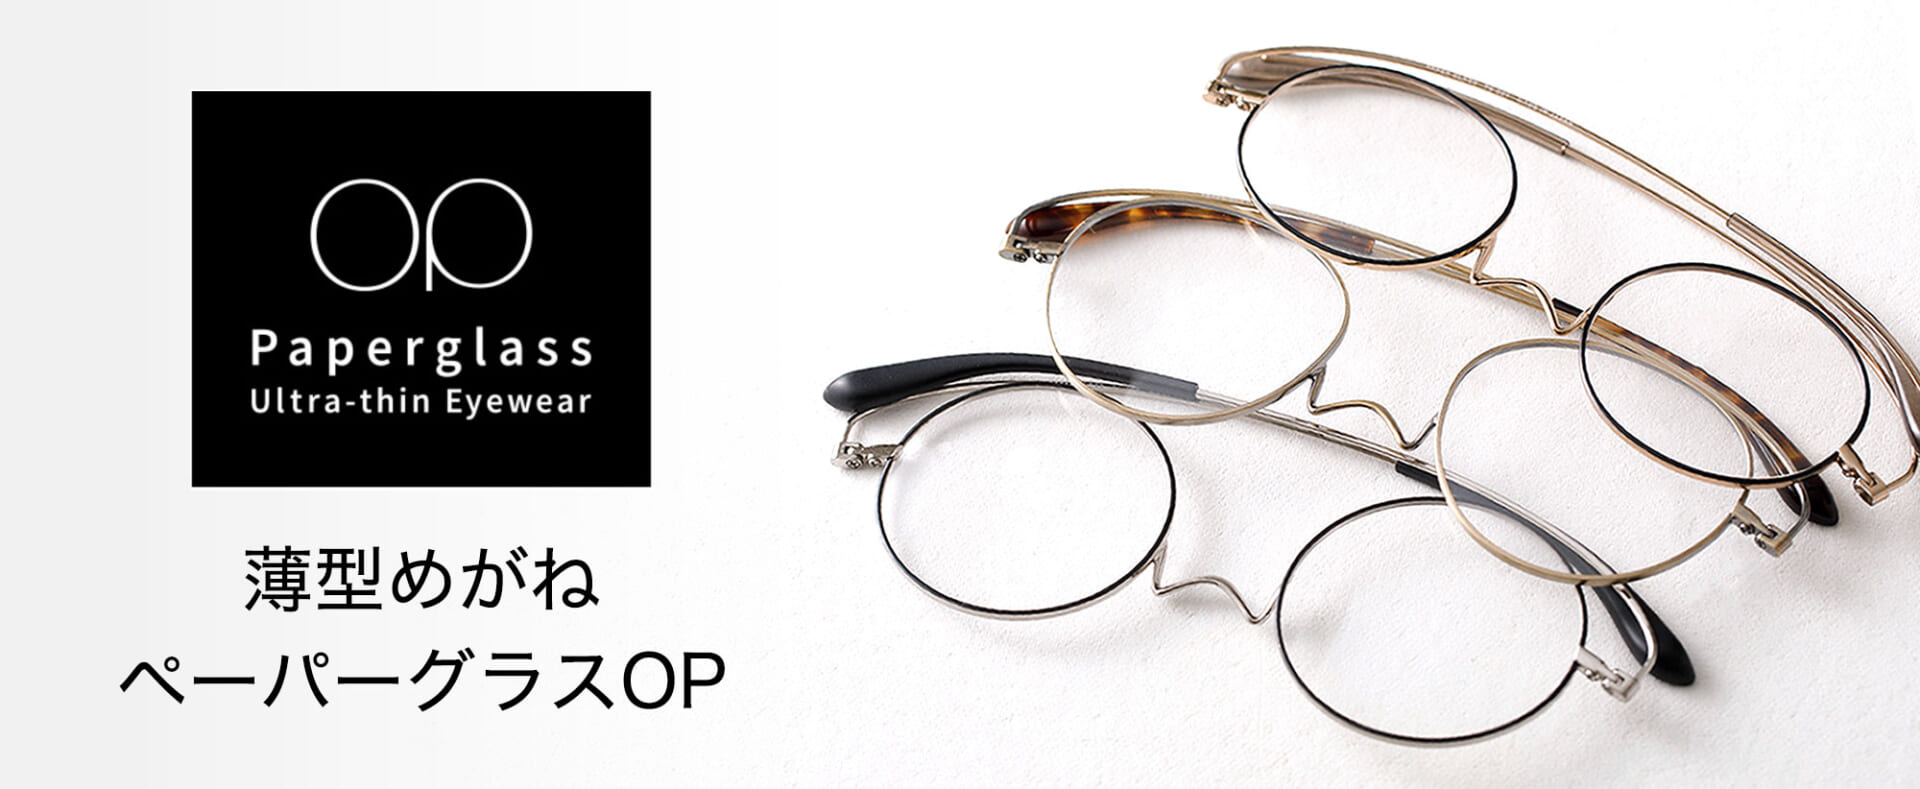 薄型メガネ ペーパーグラス 老眼鏡 リーディンググラス 遠近両用 近視 遠視 累進